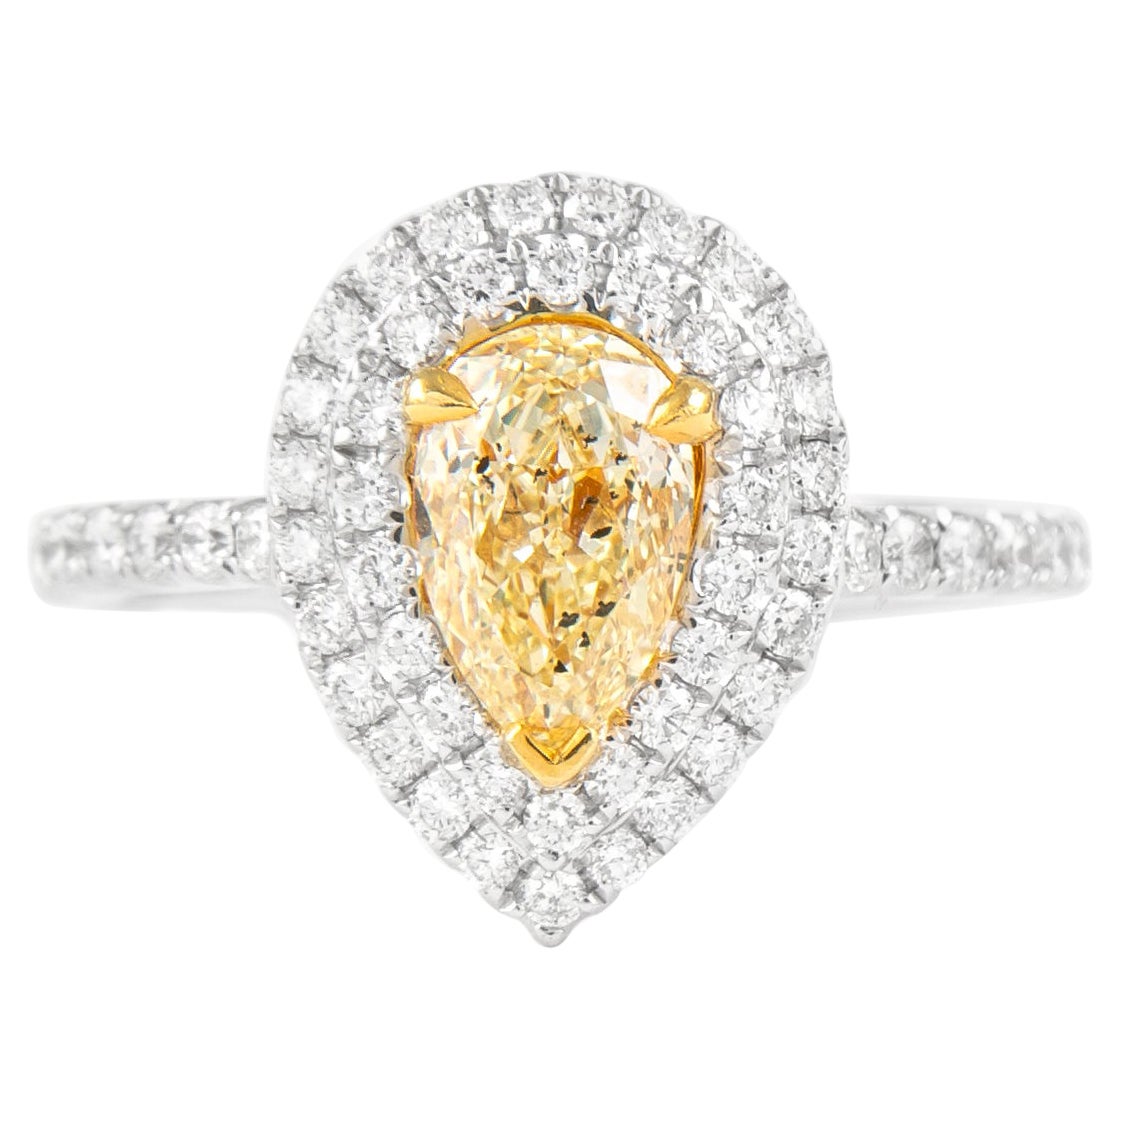 Alexander 1.68ctt Fancy Intense Yellow Pear Diamond Double Halo Ring 18k